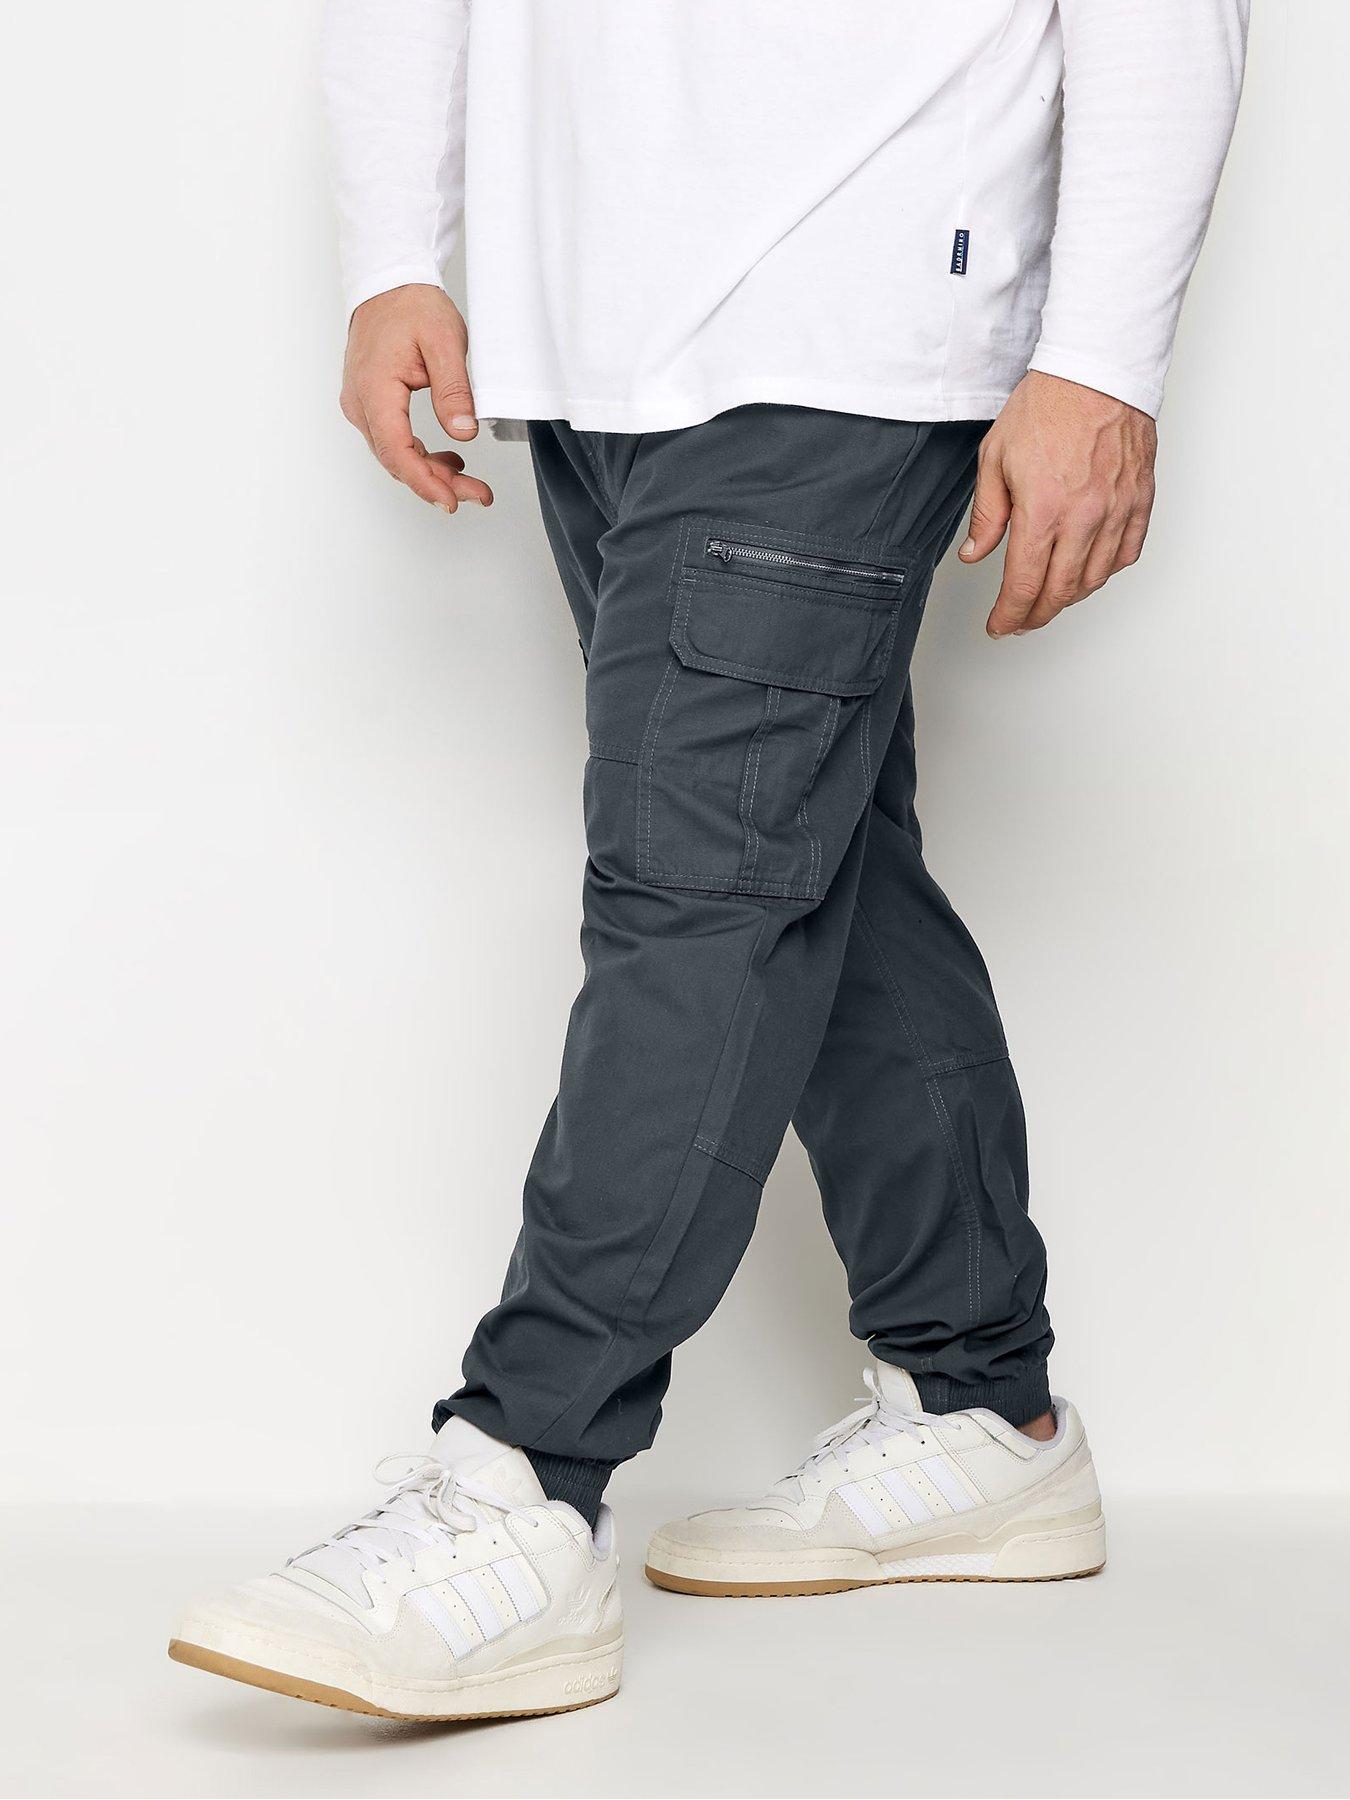 DKNY Twill Side-Zip Ankle Pants - Macy's